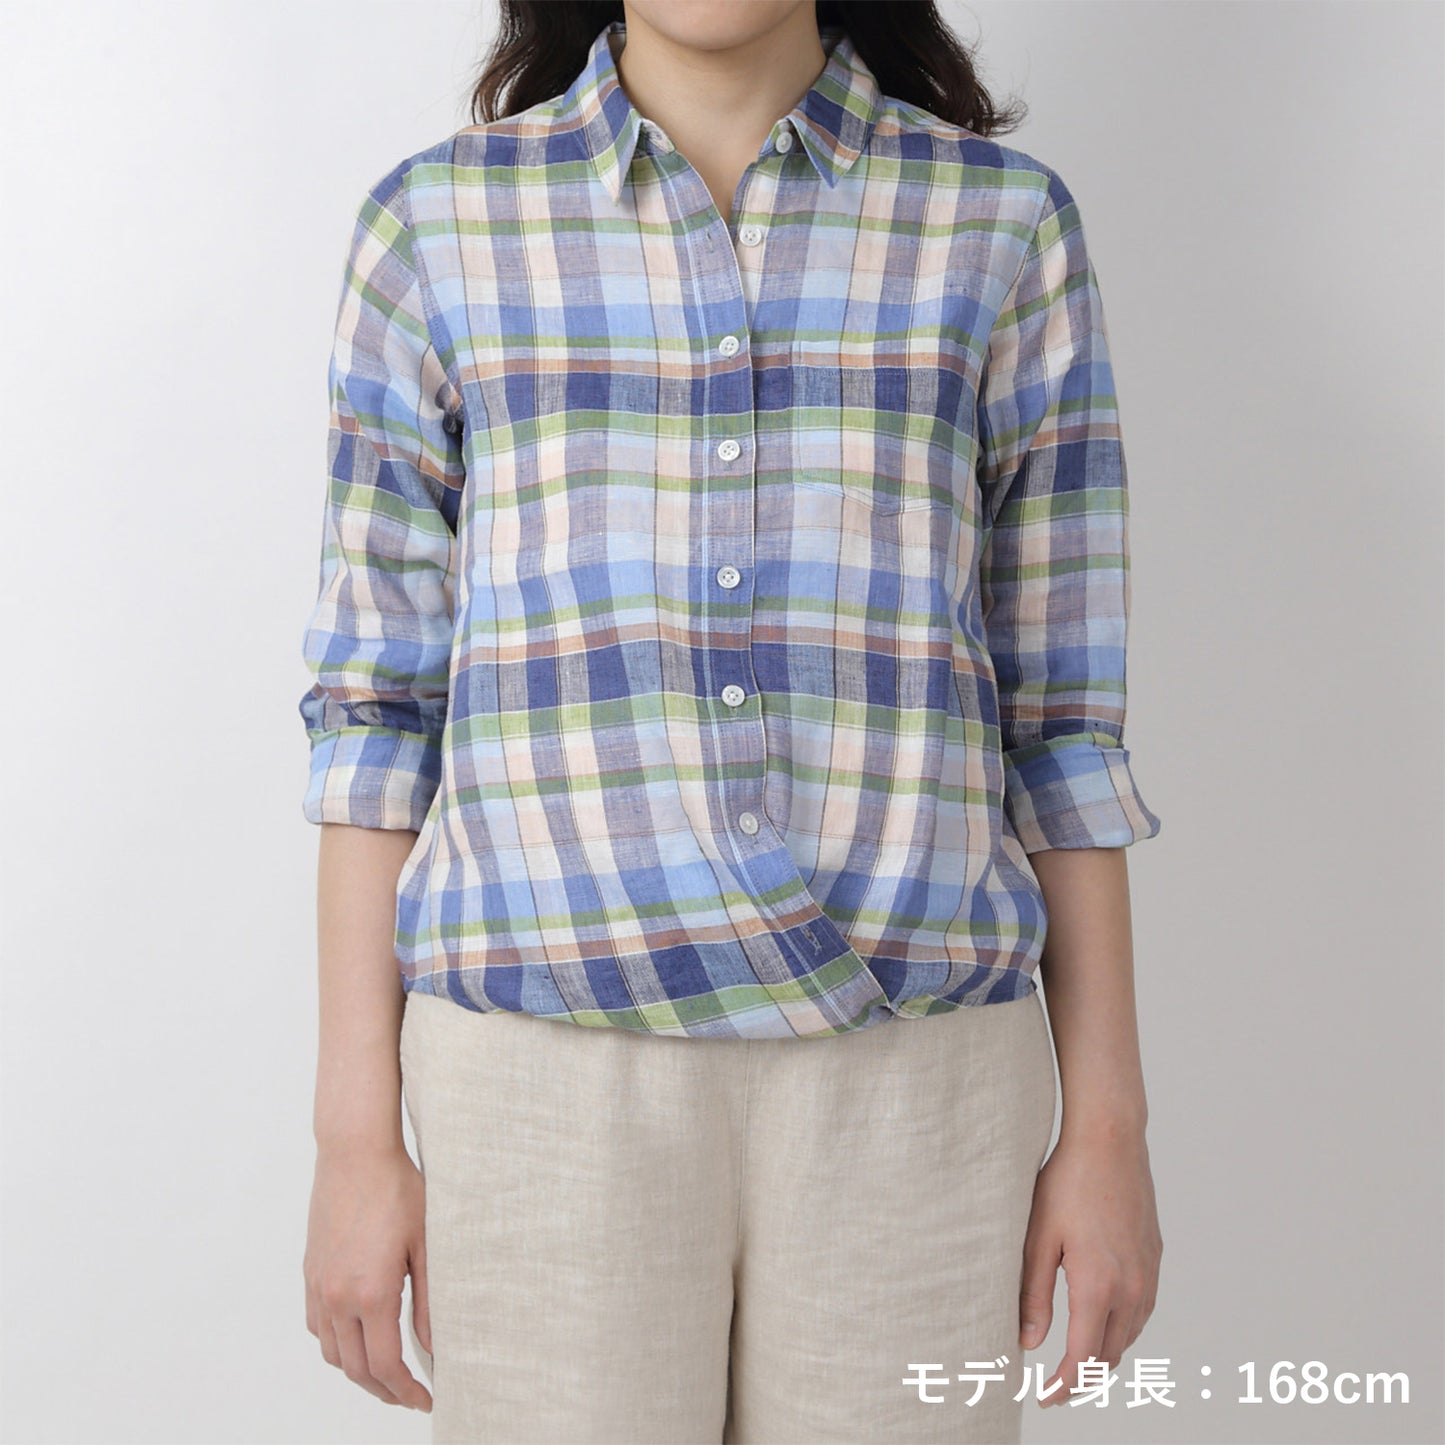 リネンチェックシャツ(model:168cm 着用サイズ:SM)